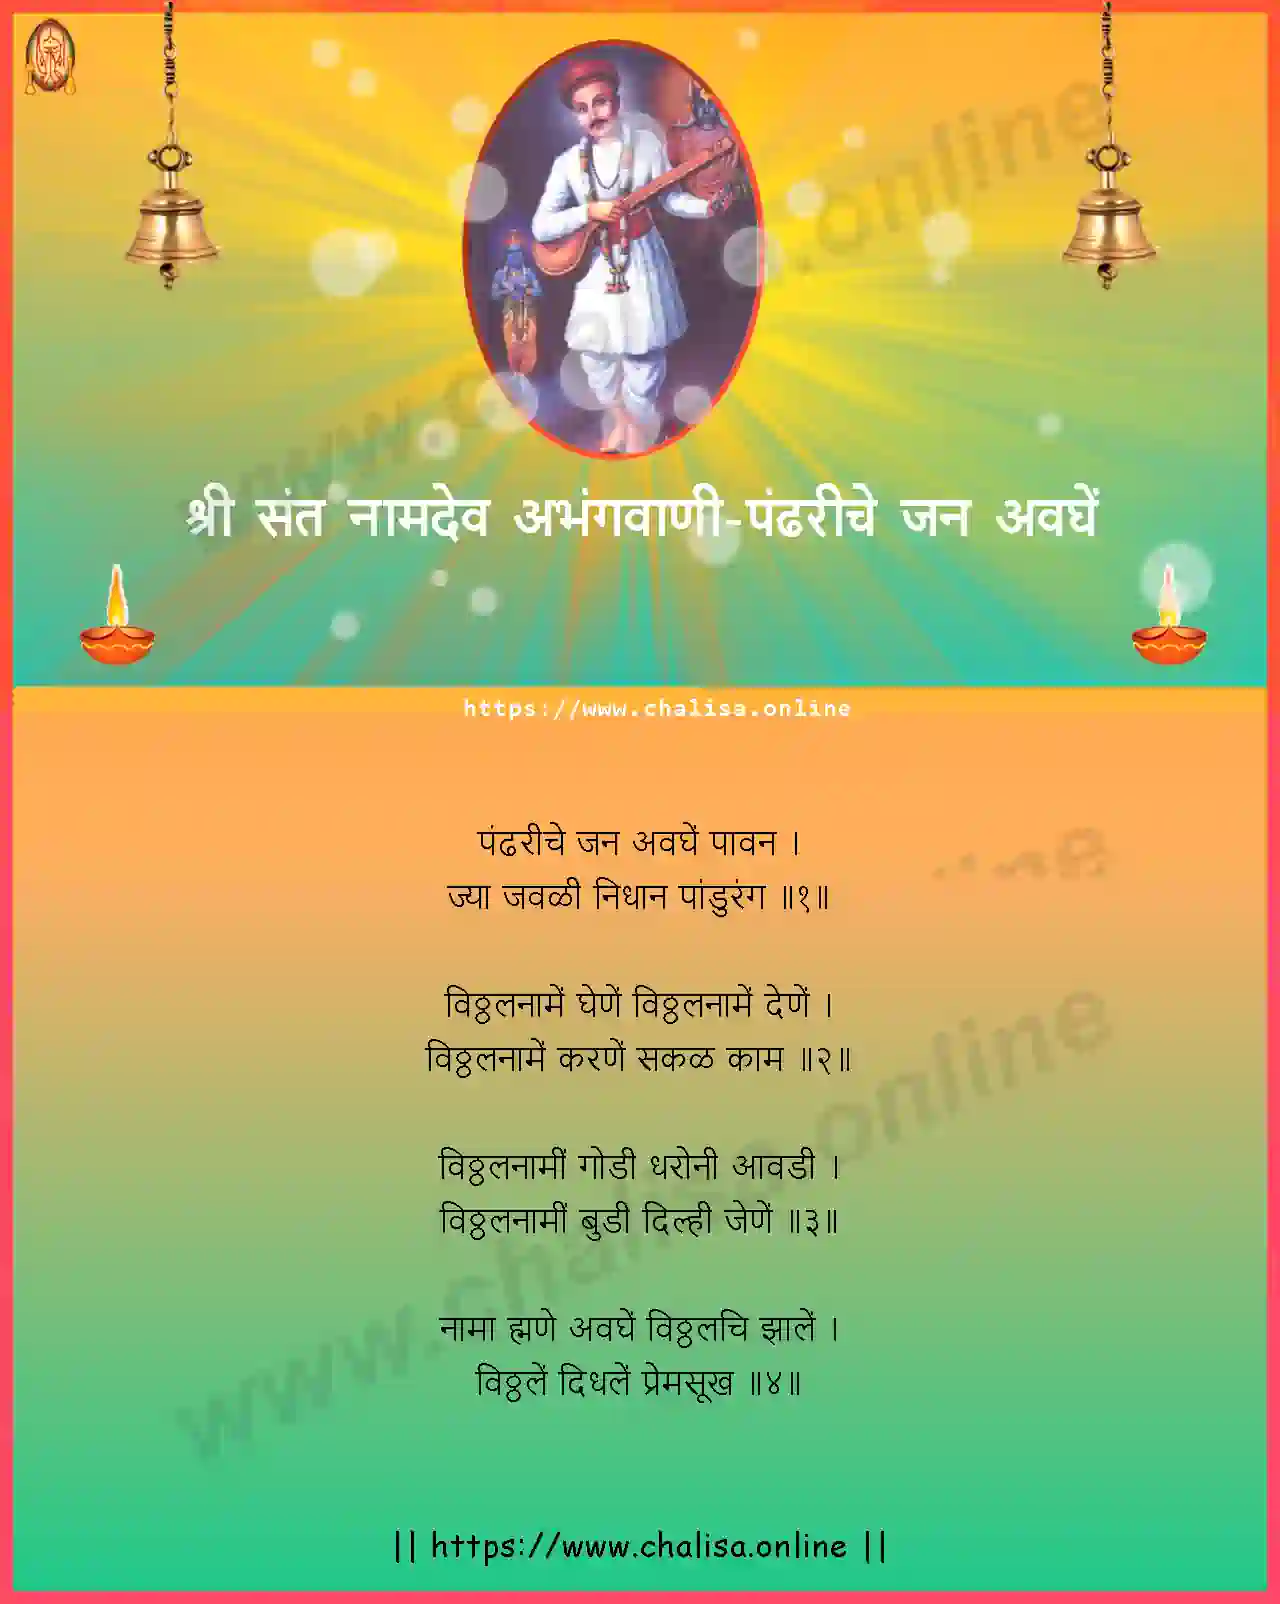 pandhariche-jan-avaghe-shri-sant-namadev-abhang-marathi-lyrics-download